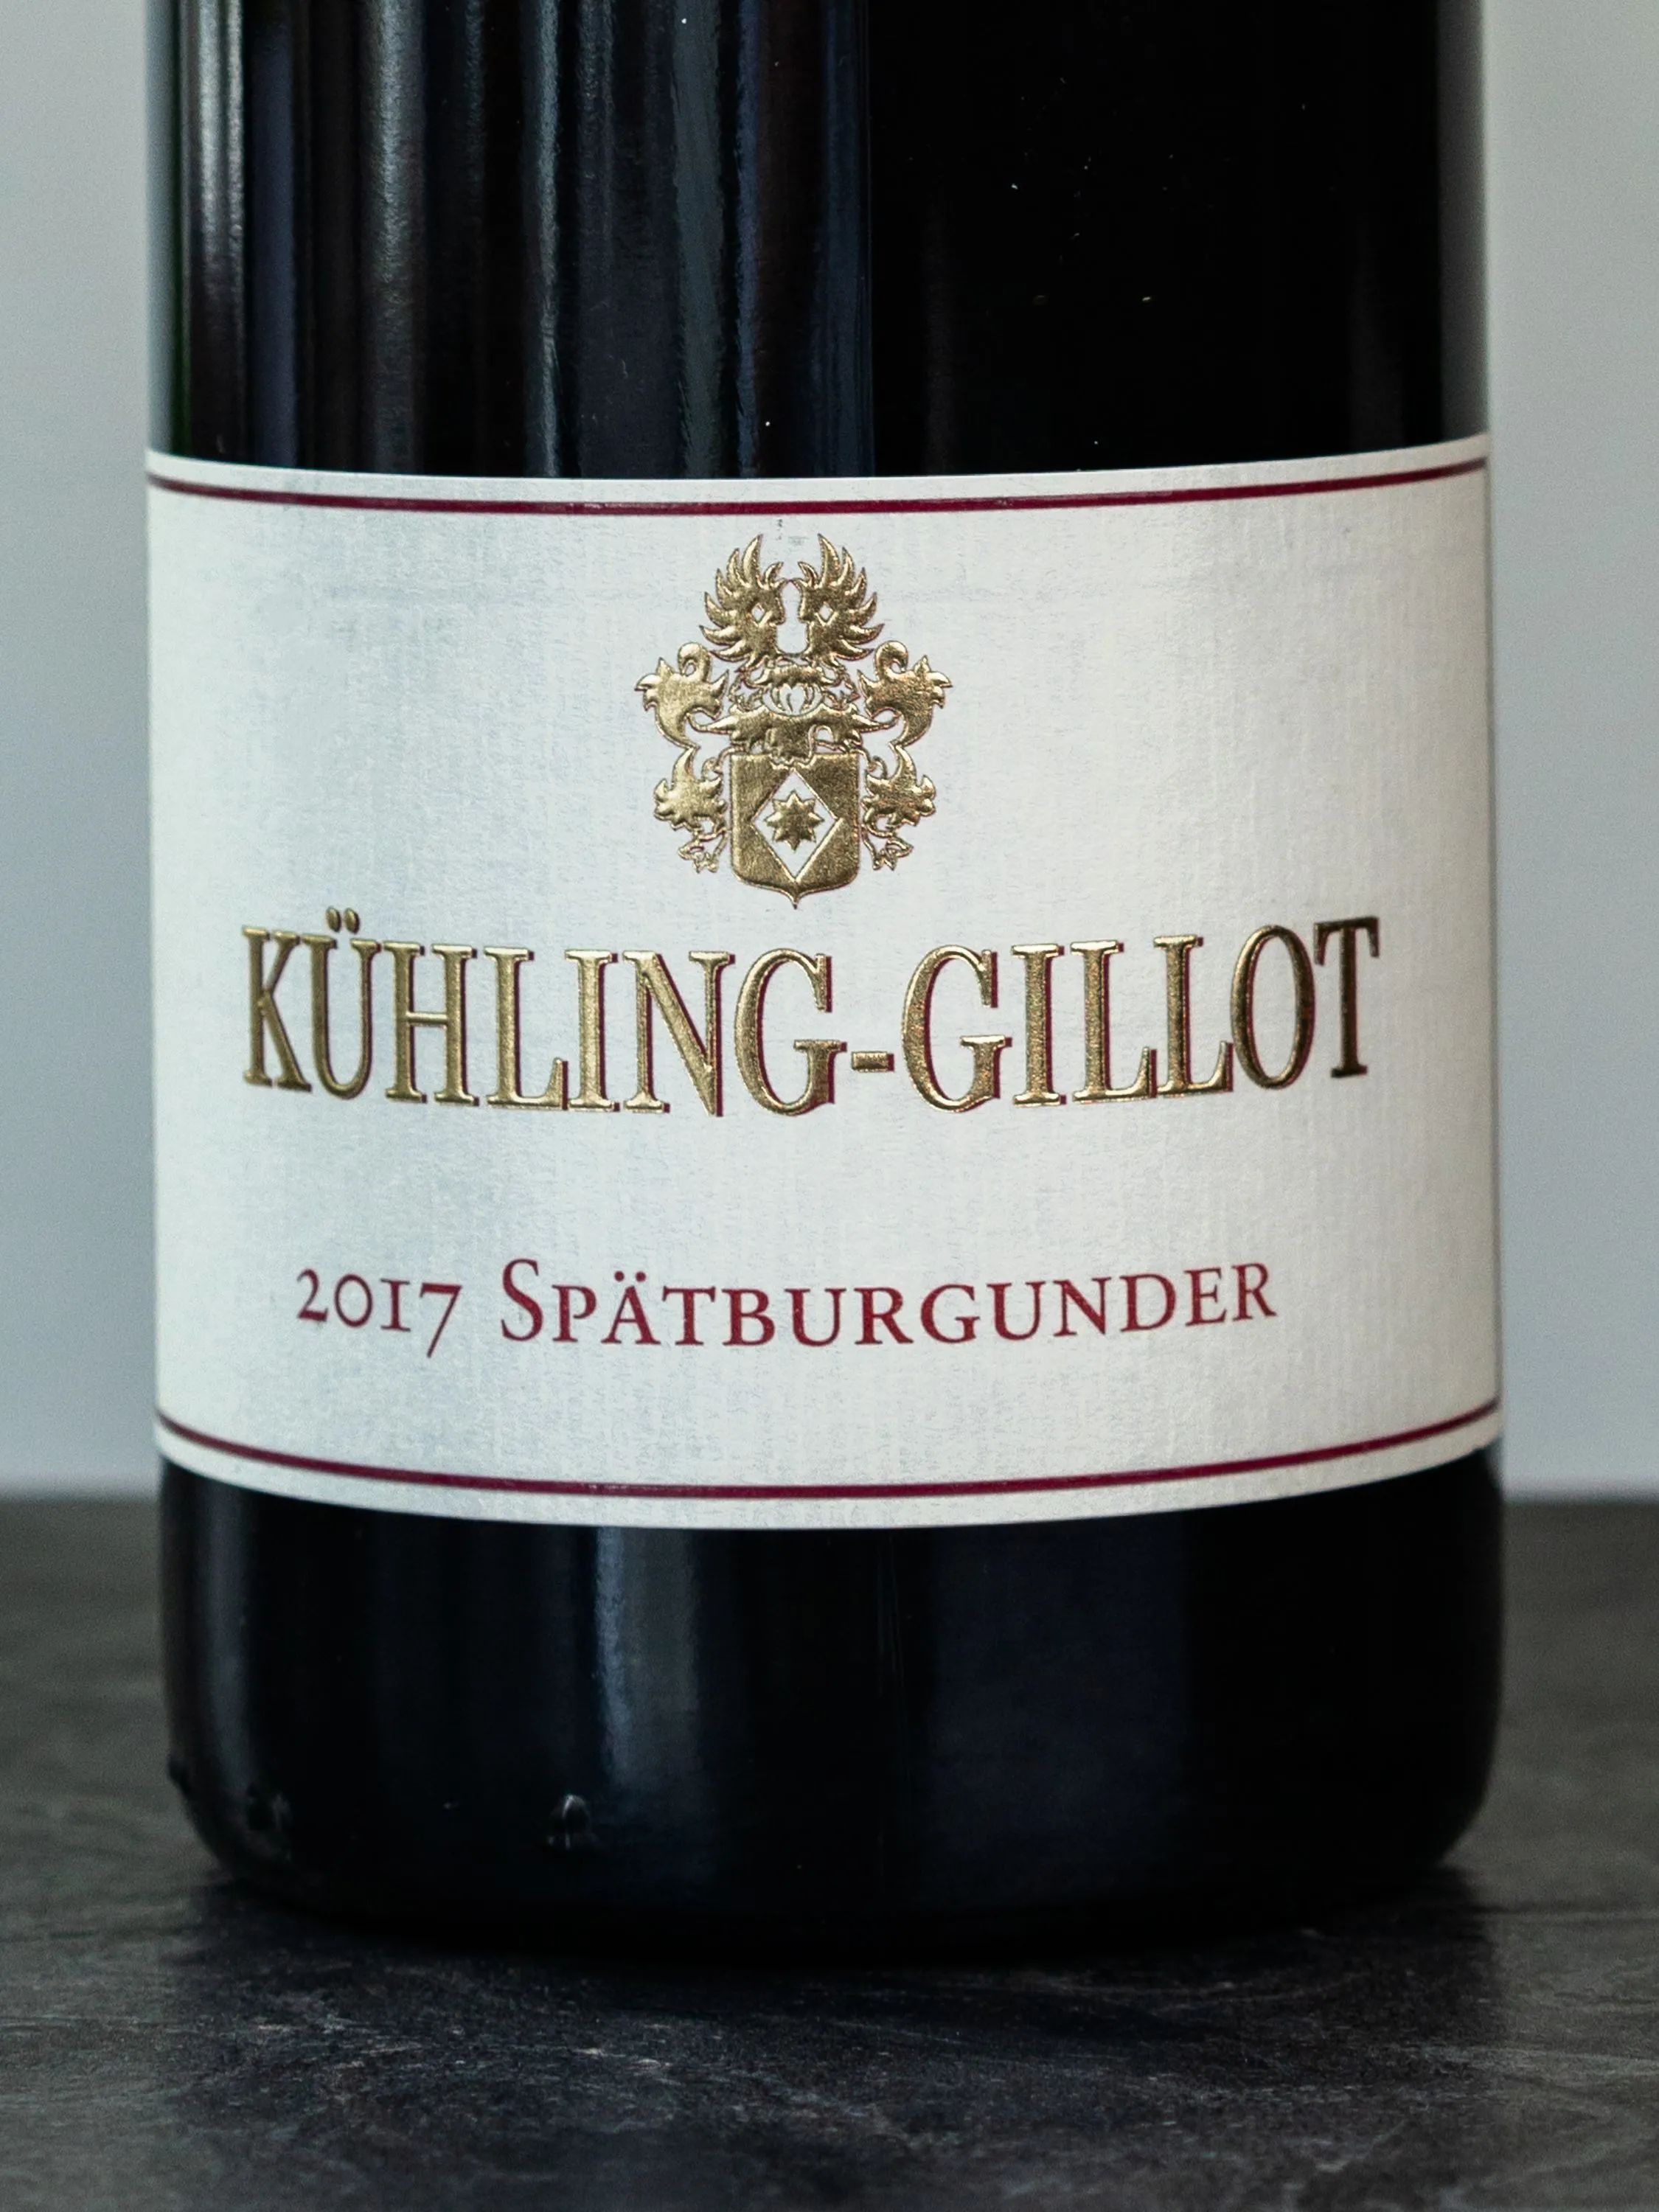 Вино Kuhling-Gillot Spatburgunder Trocken Rheinhessen / Кюллинг-Гиллот Шпетбургундер Трокен Райнхессен